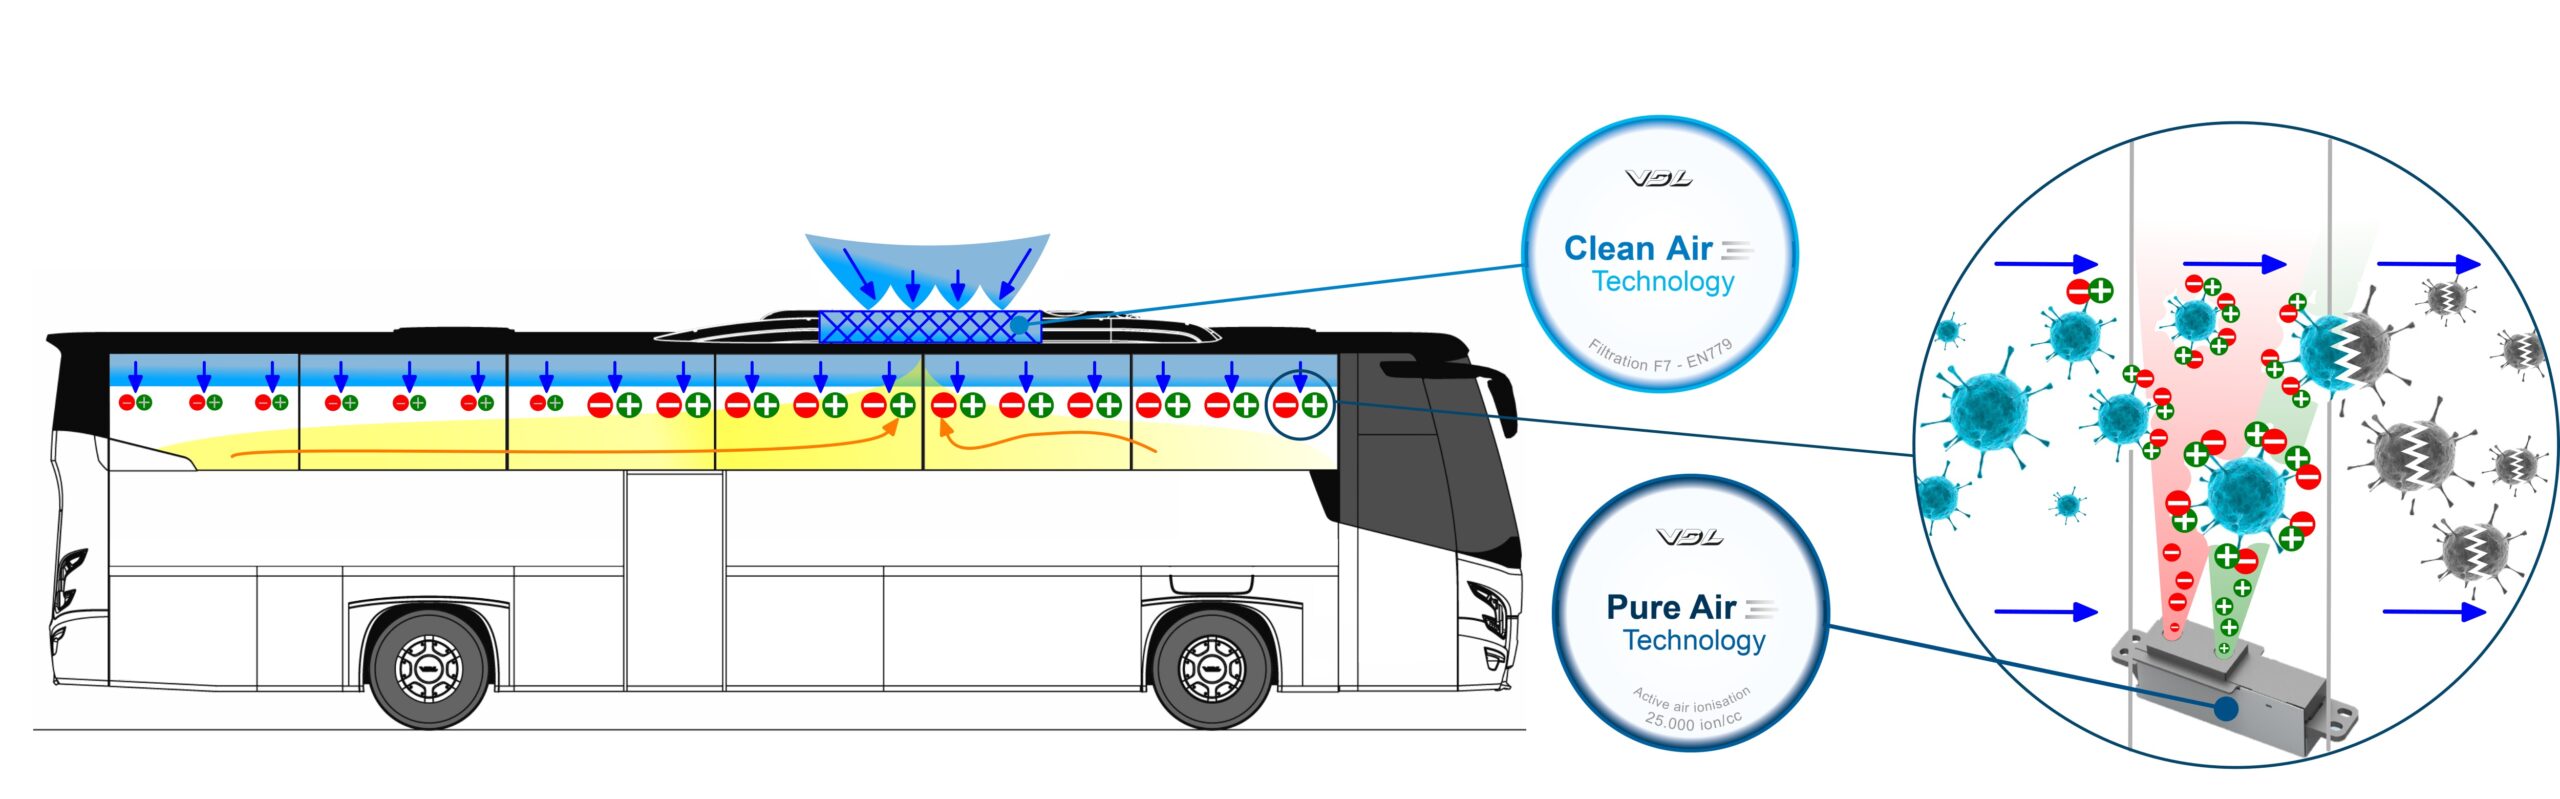 VDL Bus & Coach présente la technologie VDL Pure/Clean Air : comment innover pendant le COVID-19